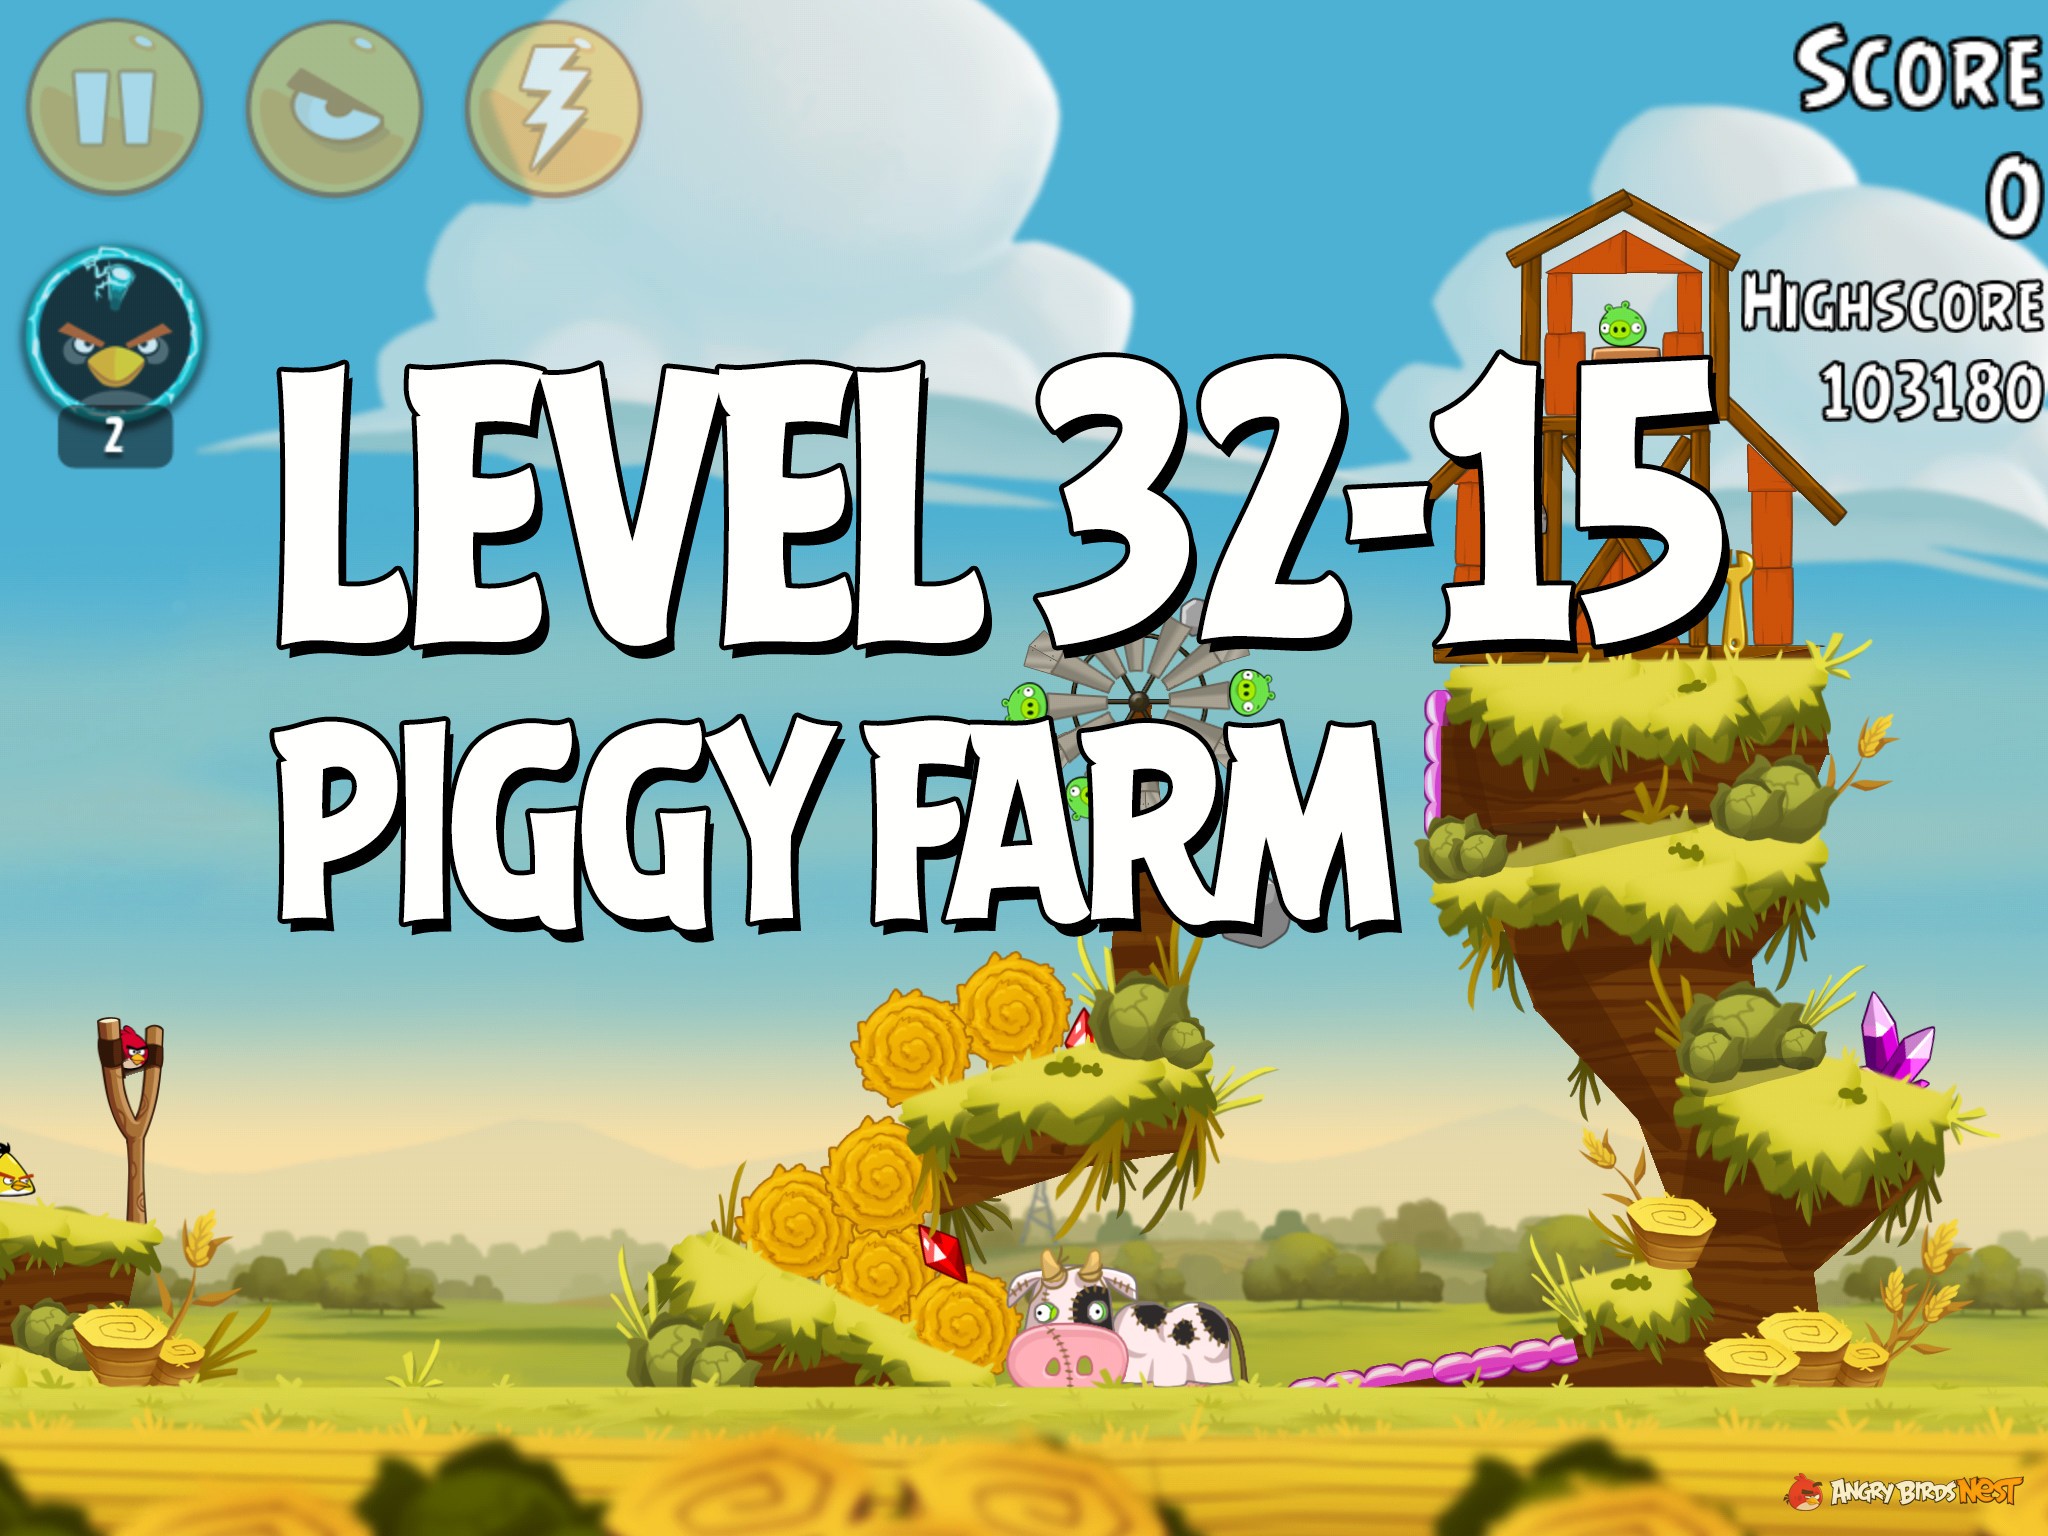 Angry-Birds-Piggy-Farm-Level-32-15